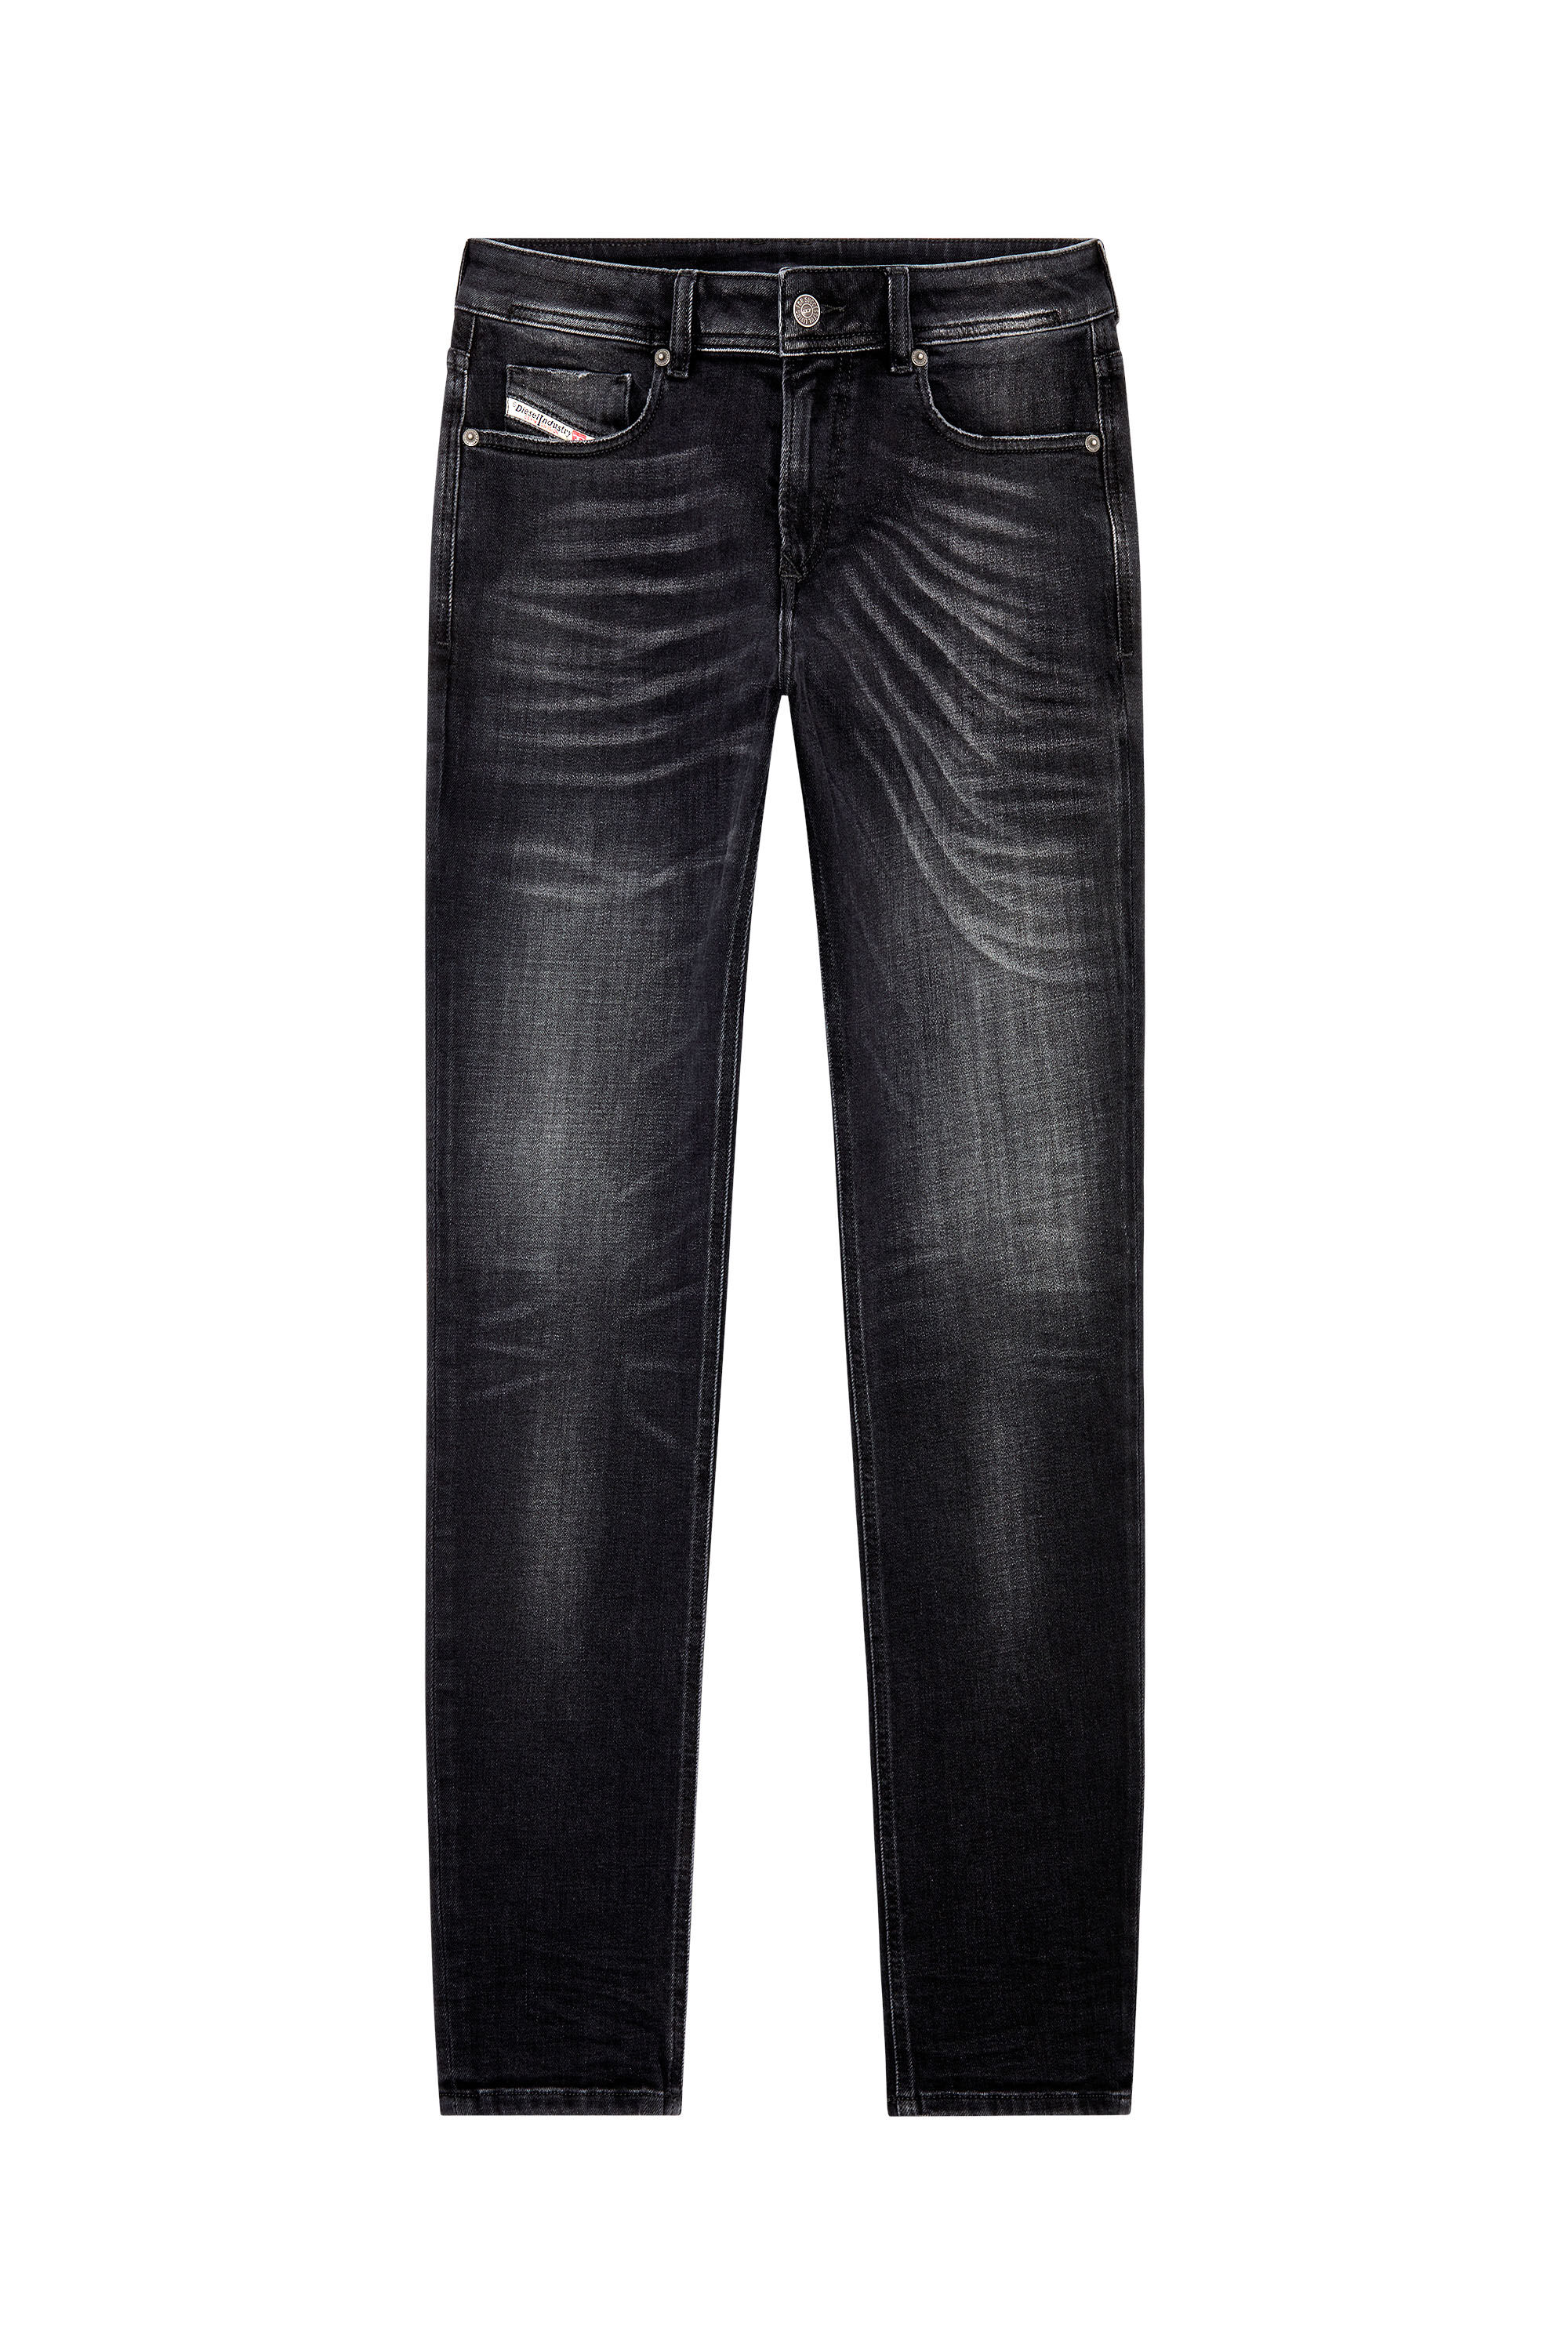 Diesel - Skinny Jeans 1979 Sleenker 09G54, Black/Dark grey - Image 2